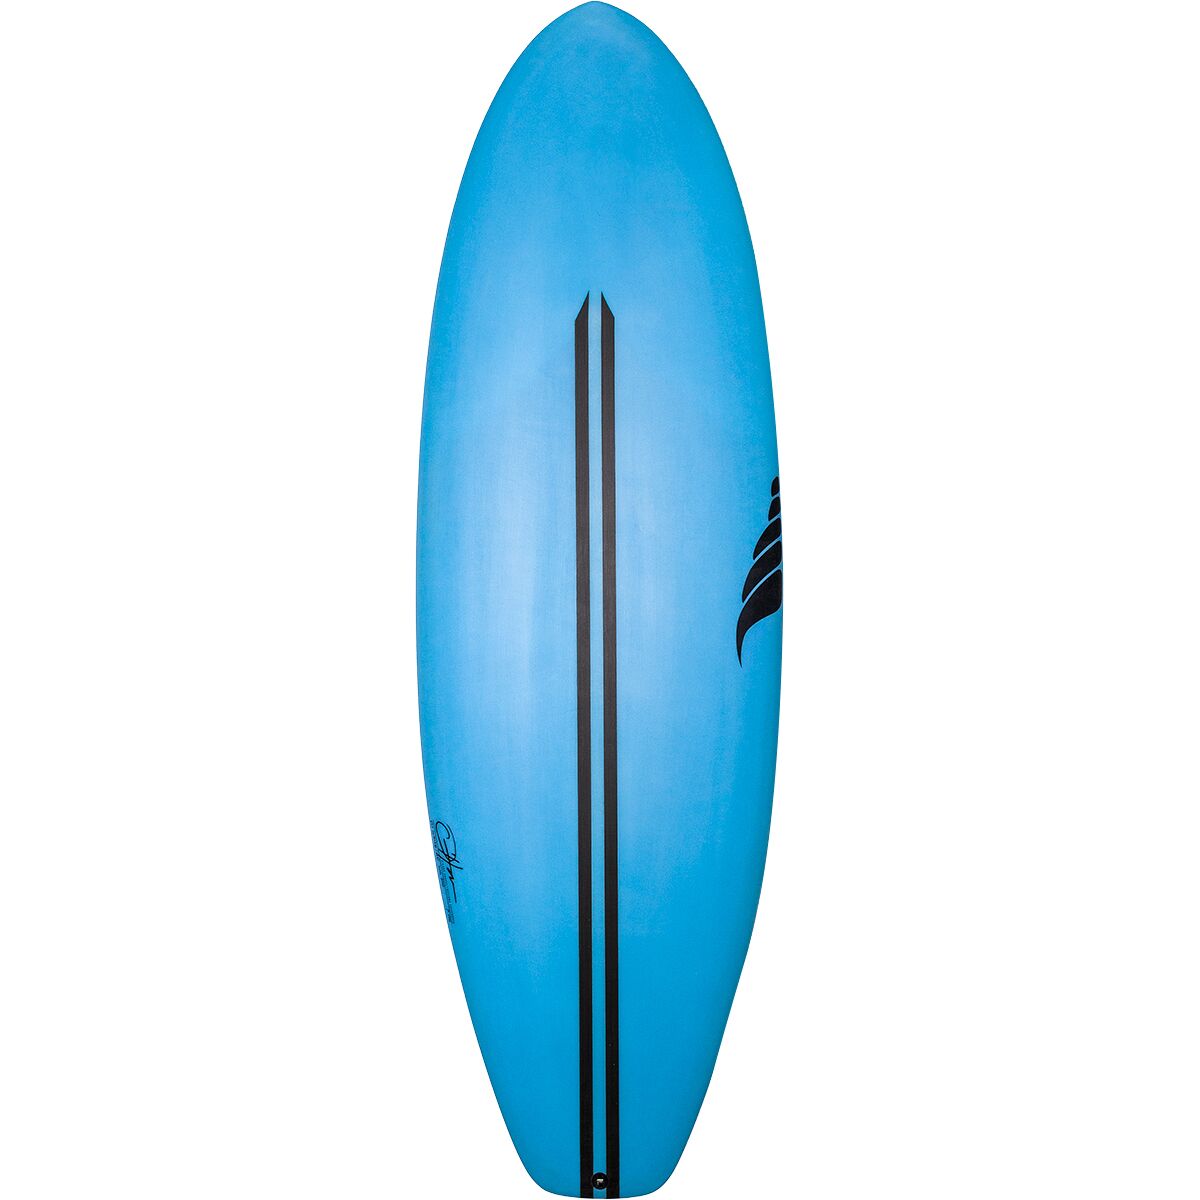 Обеденный перерыв Доска для серфинга шортборд Solid Surfboards